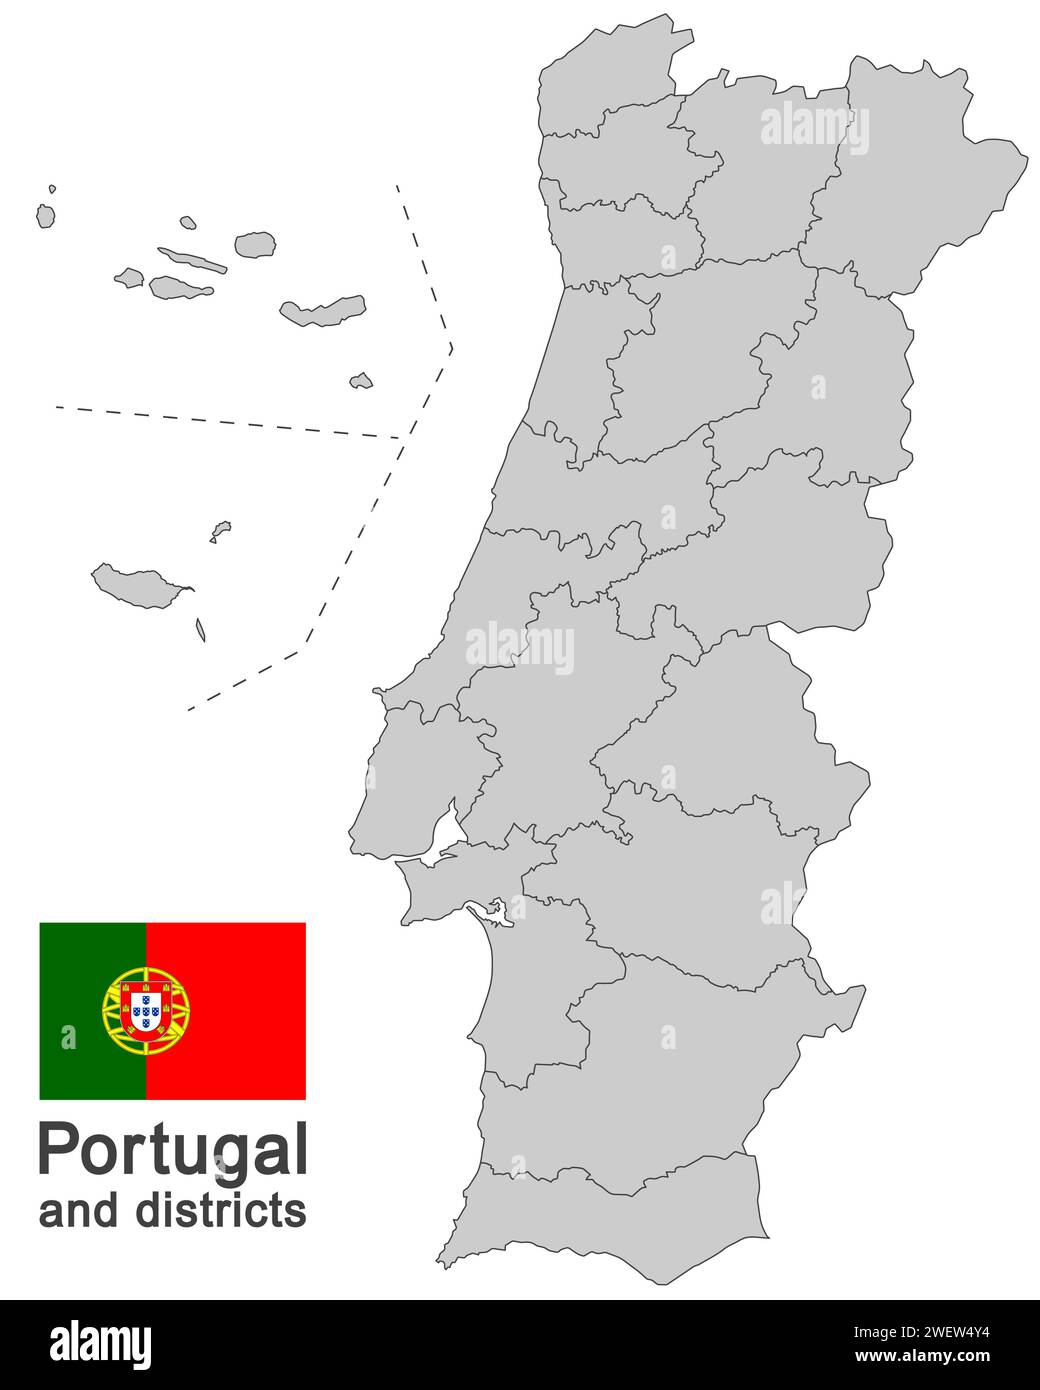 Das europäische Land Portugal und die Bezirke im einzelnen Stock Vektor